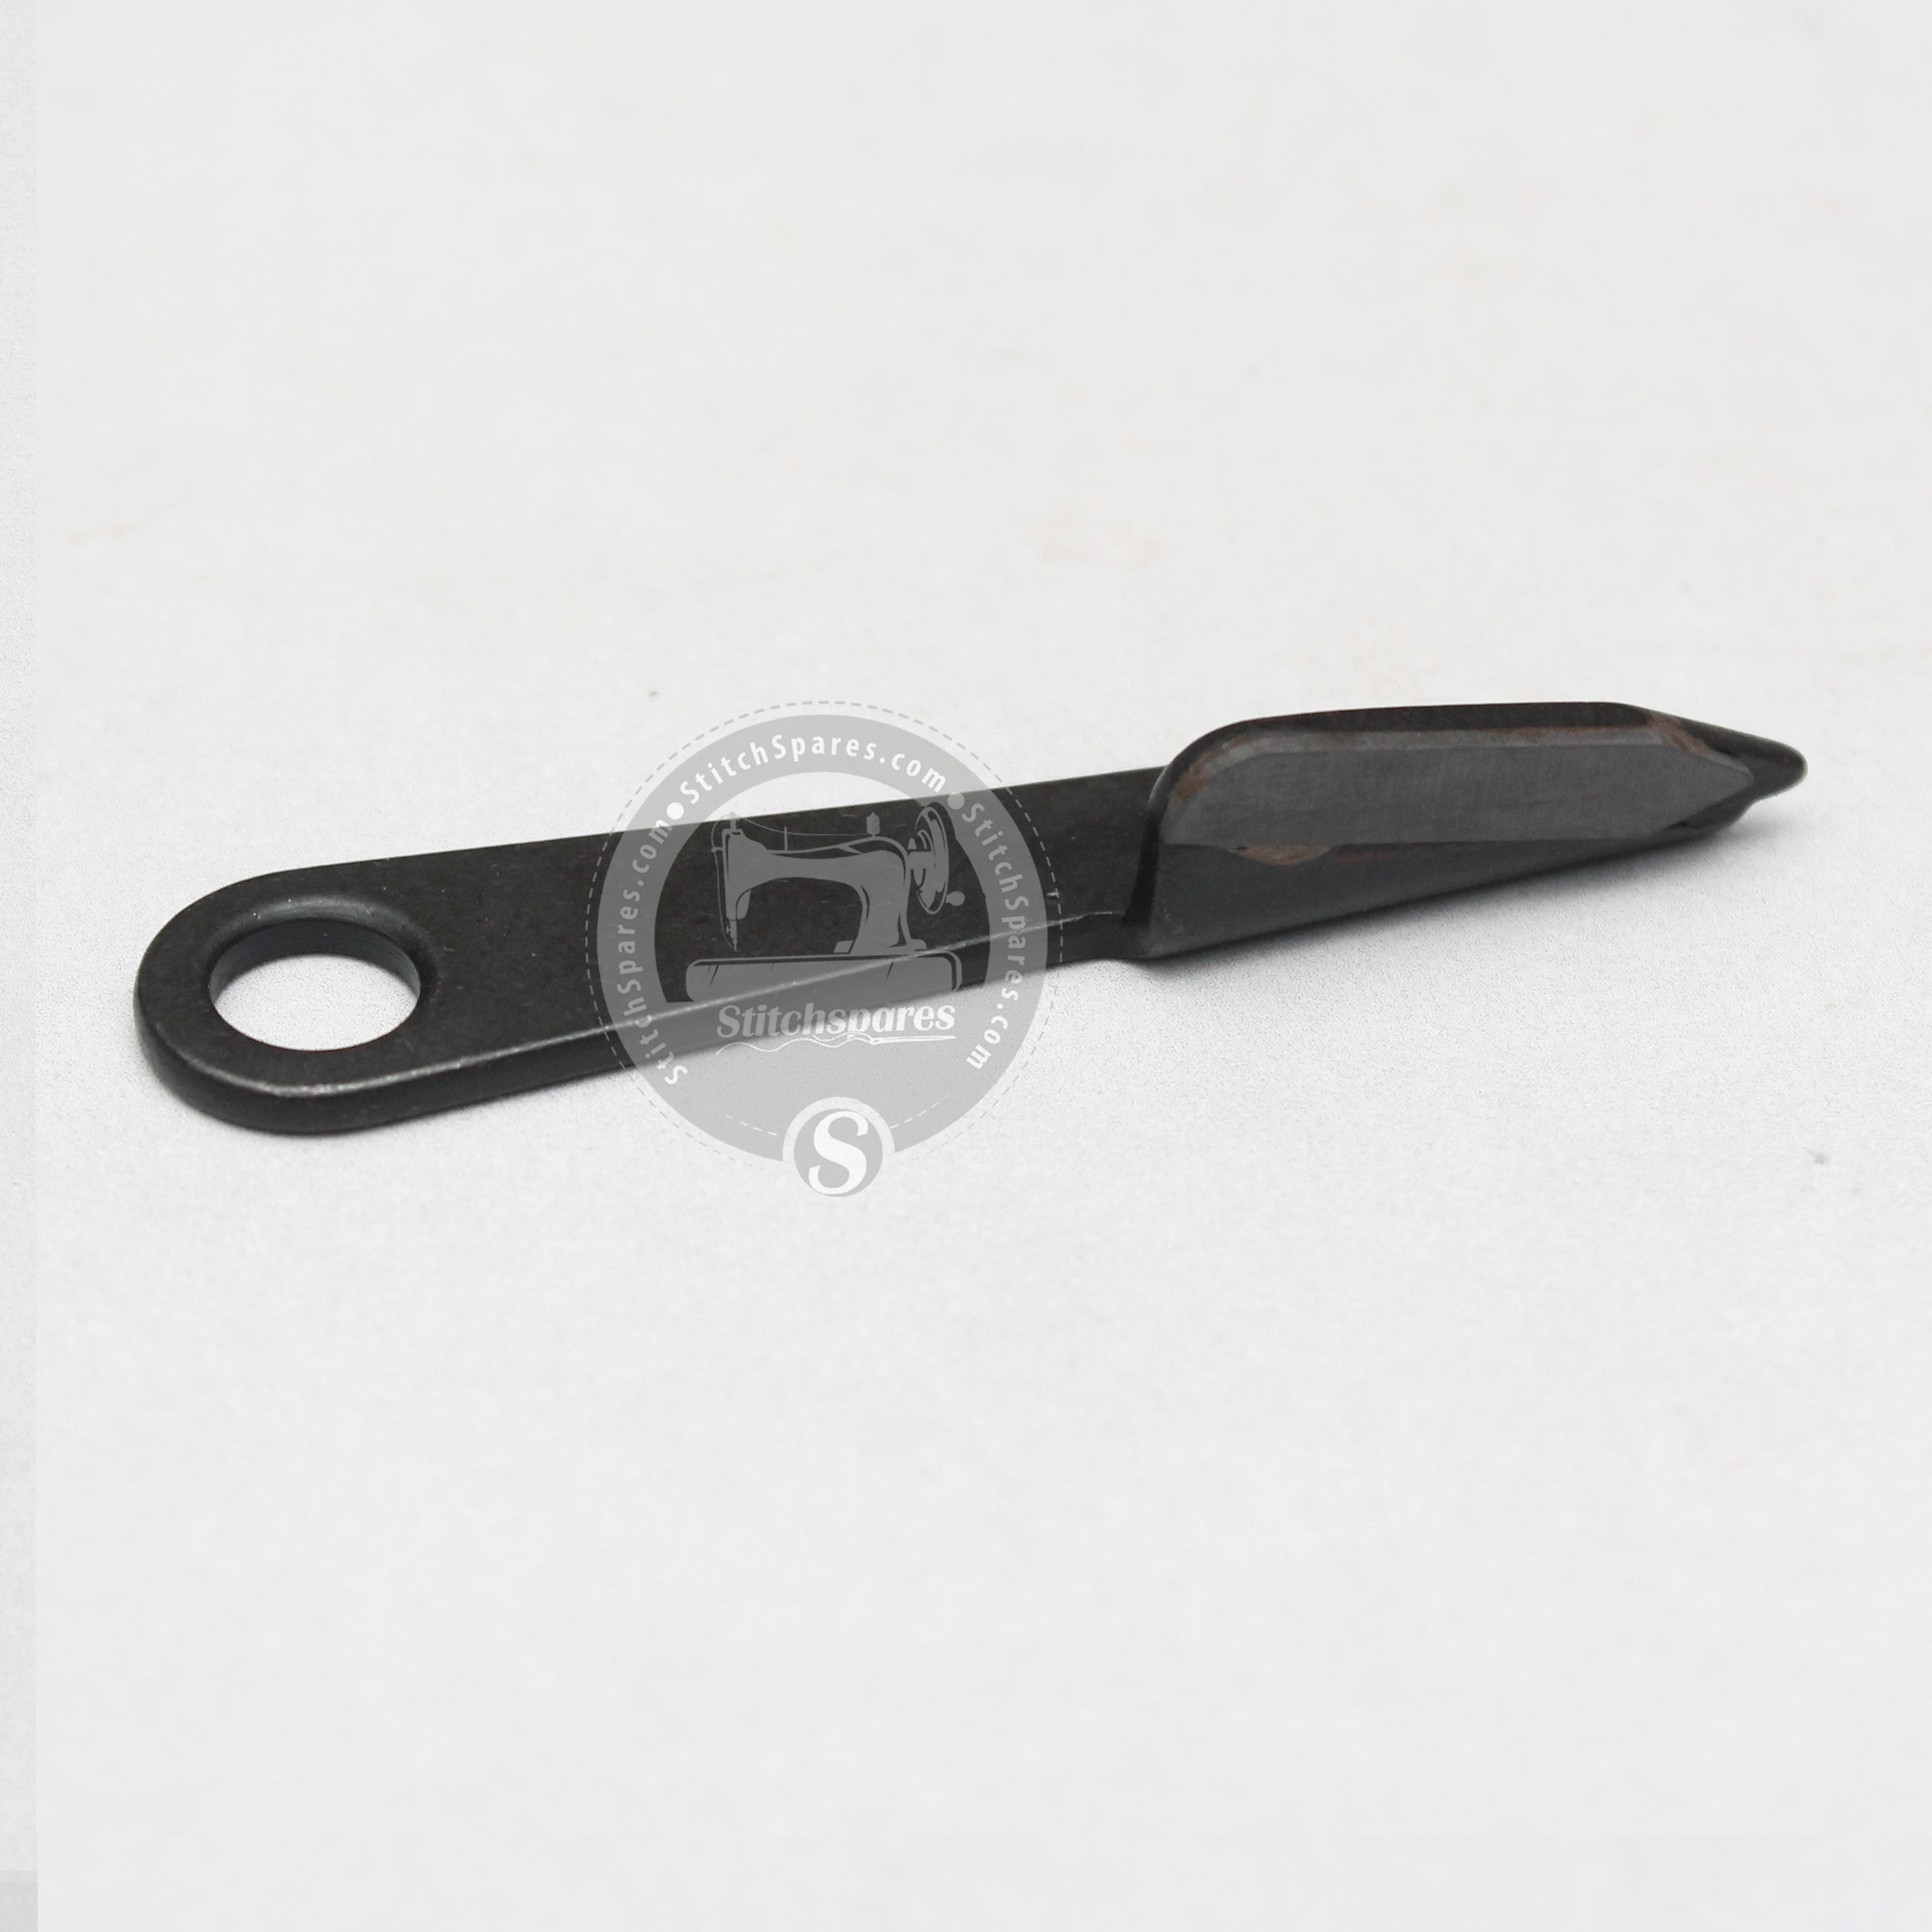 YJ-125MM (लेजियांग ओरिजिनल) कपड़ा काटने की मशीन के लिए निचला चाकू, स्पेयर पार्ट नंबर: S275